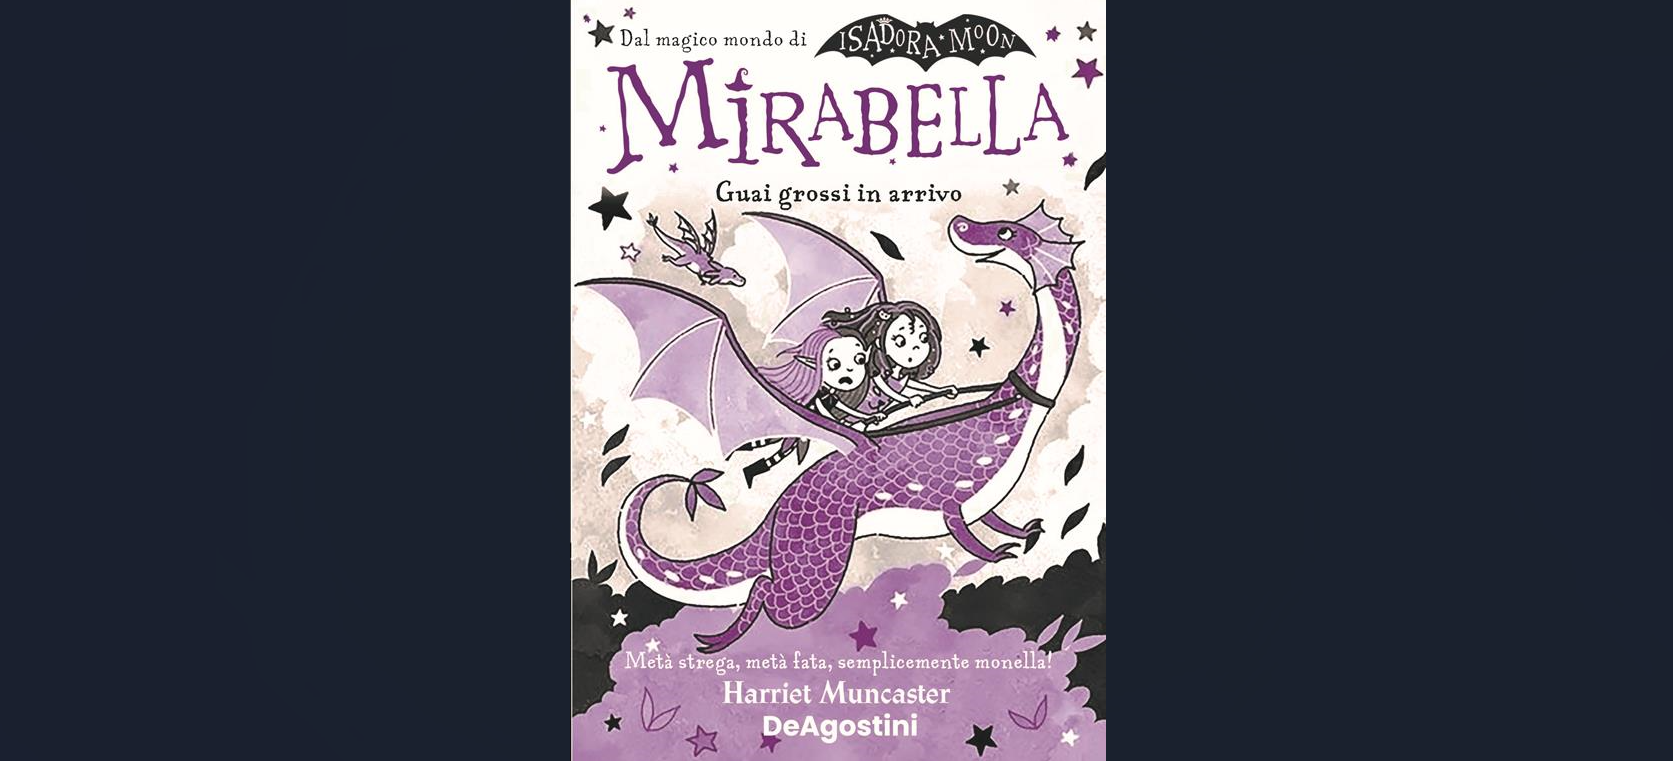 Mirabella torna in libreria… e sono “Guai grossi in arrivo” per il personaggio nato dalla penna di Harriet Muncaster